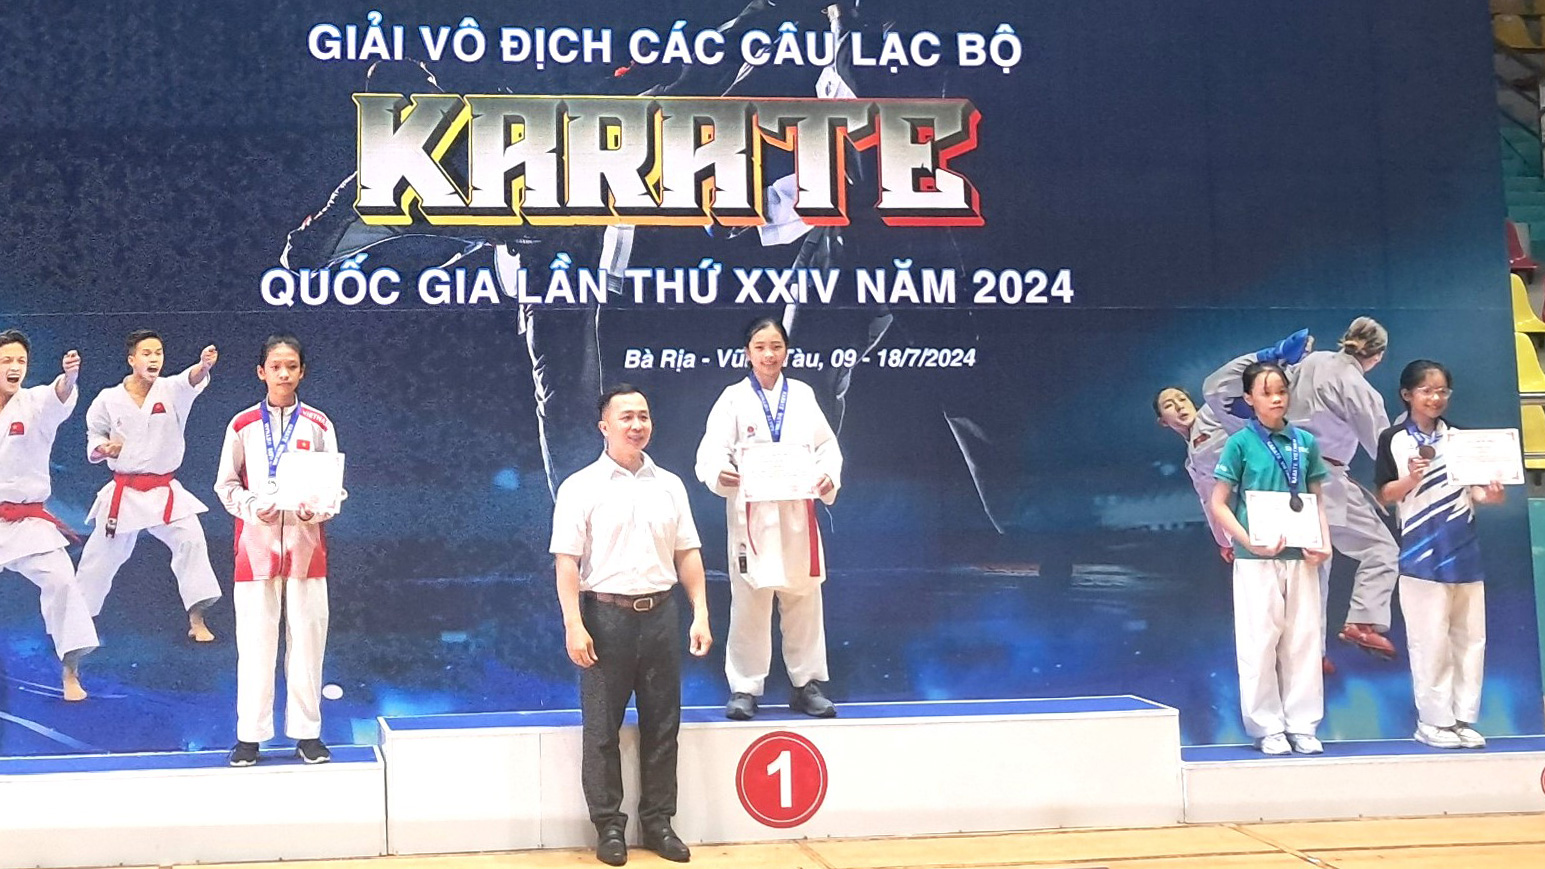 Đoàn Lâm Đồng giành 7 huy chương tại Giải Vô địch các câu lạc bộ Karate quốc gia 2024